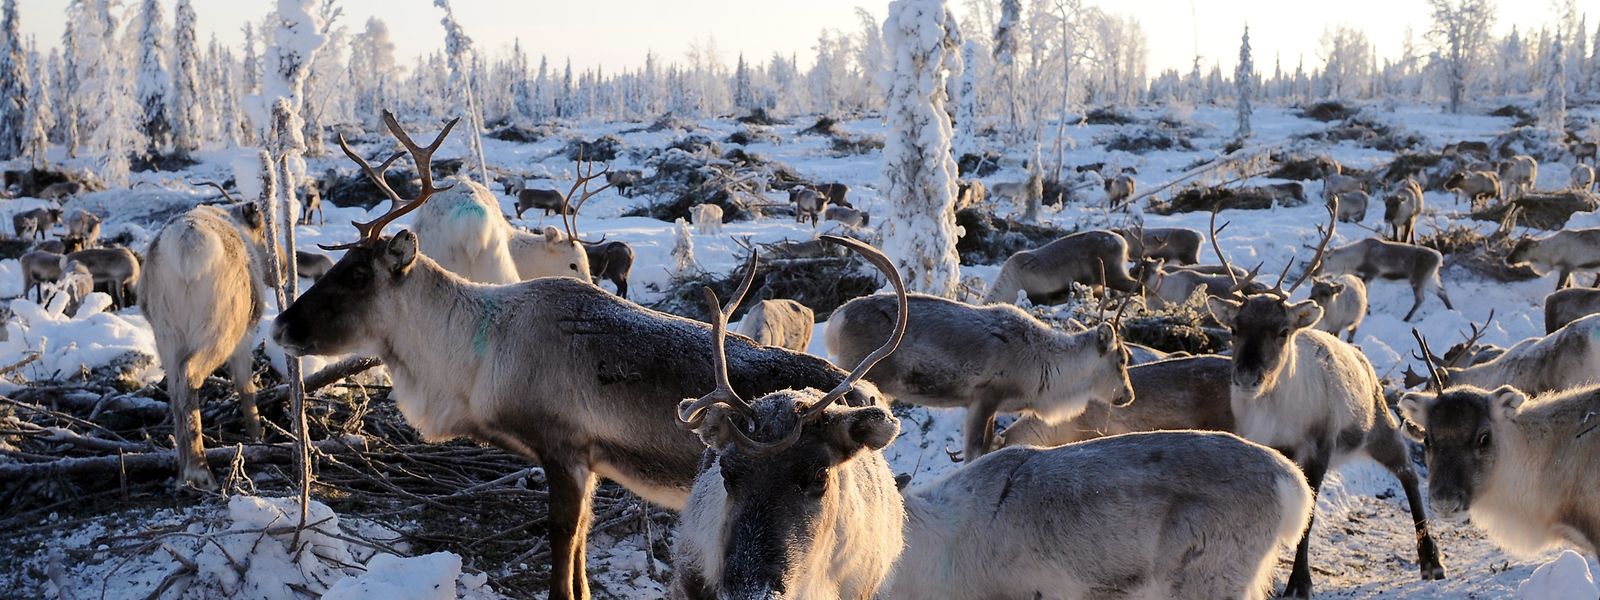 Eine Rentierherde in Lappland in Nordschweden. Viele in Lappland beheimatete Rentiere ziehen wegen des Klimawandels auf der Suche nach Nahrung immer häufiger weite Strecken in den Süden.